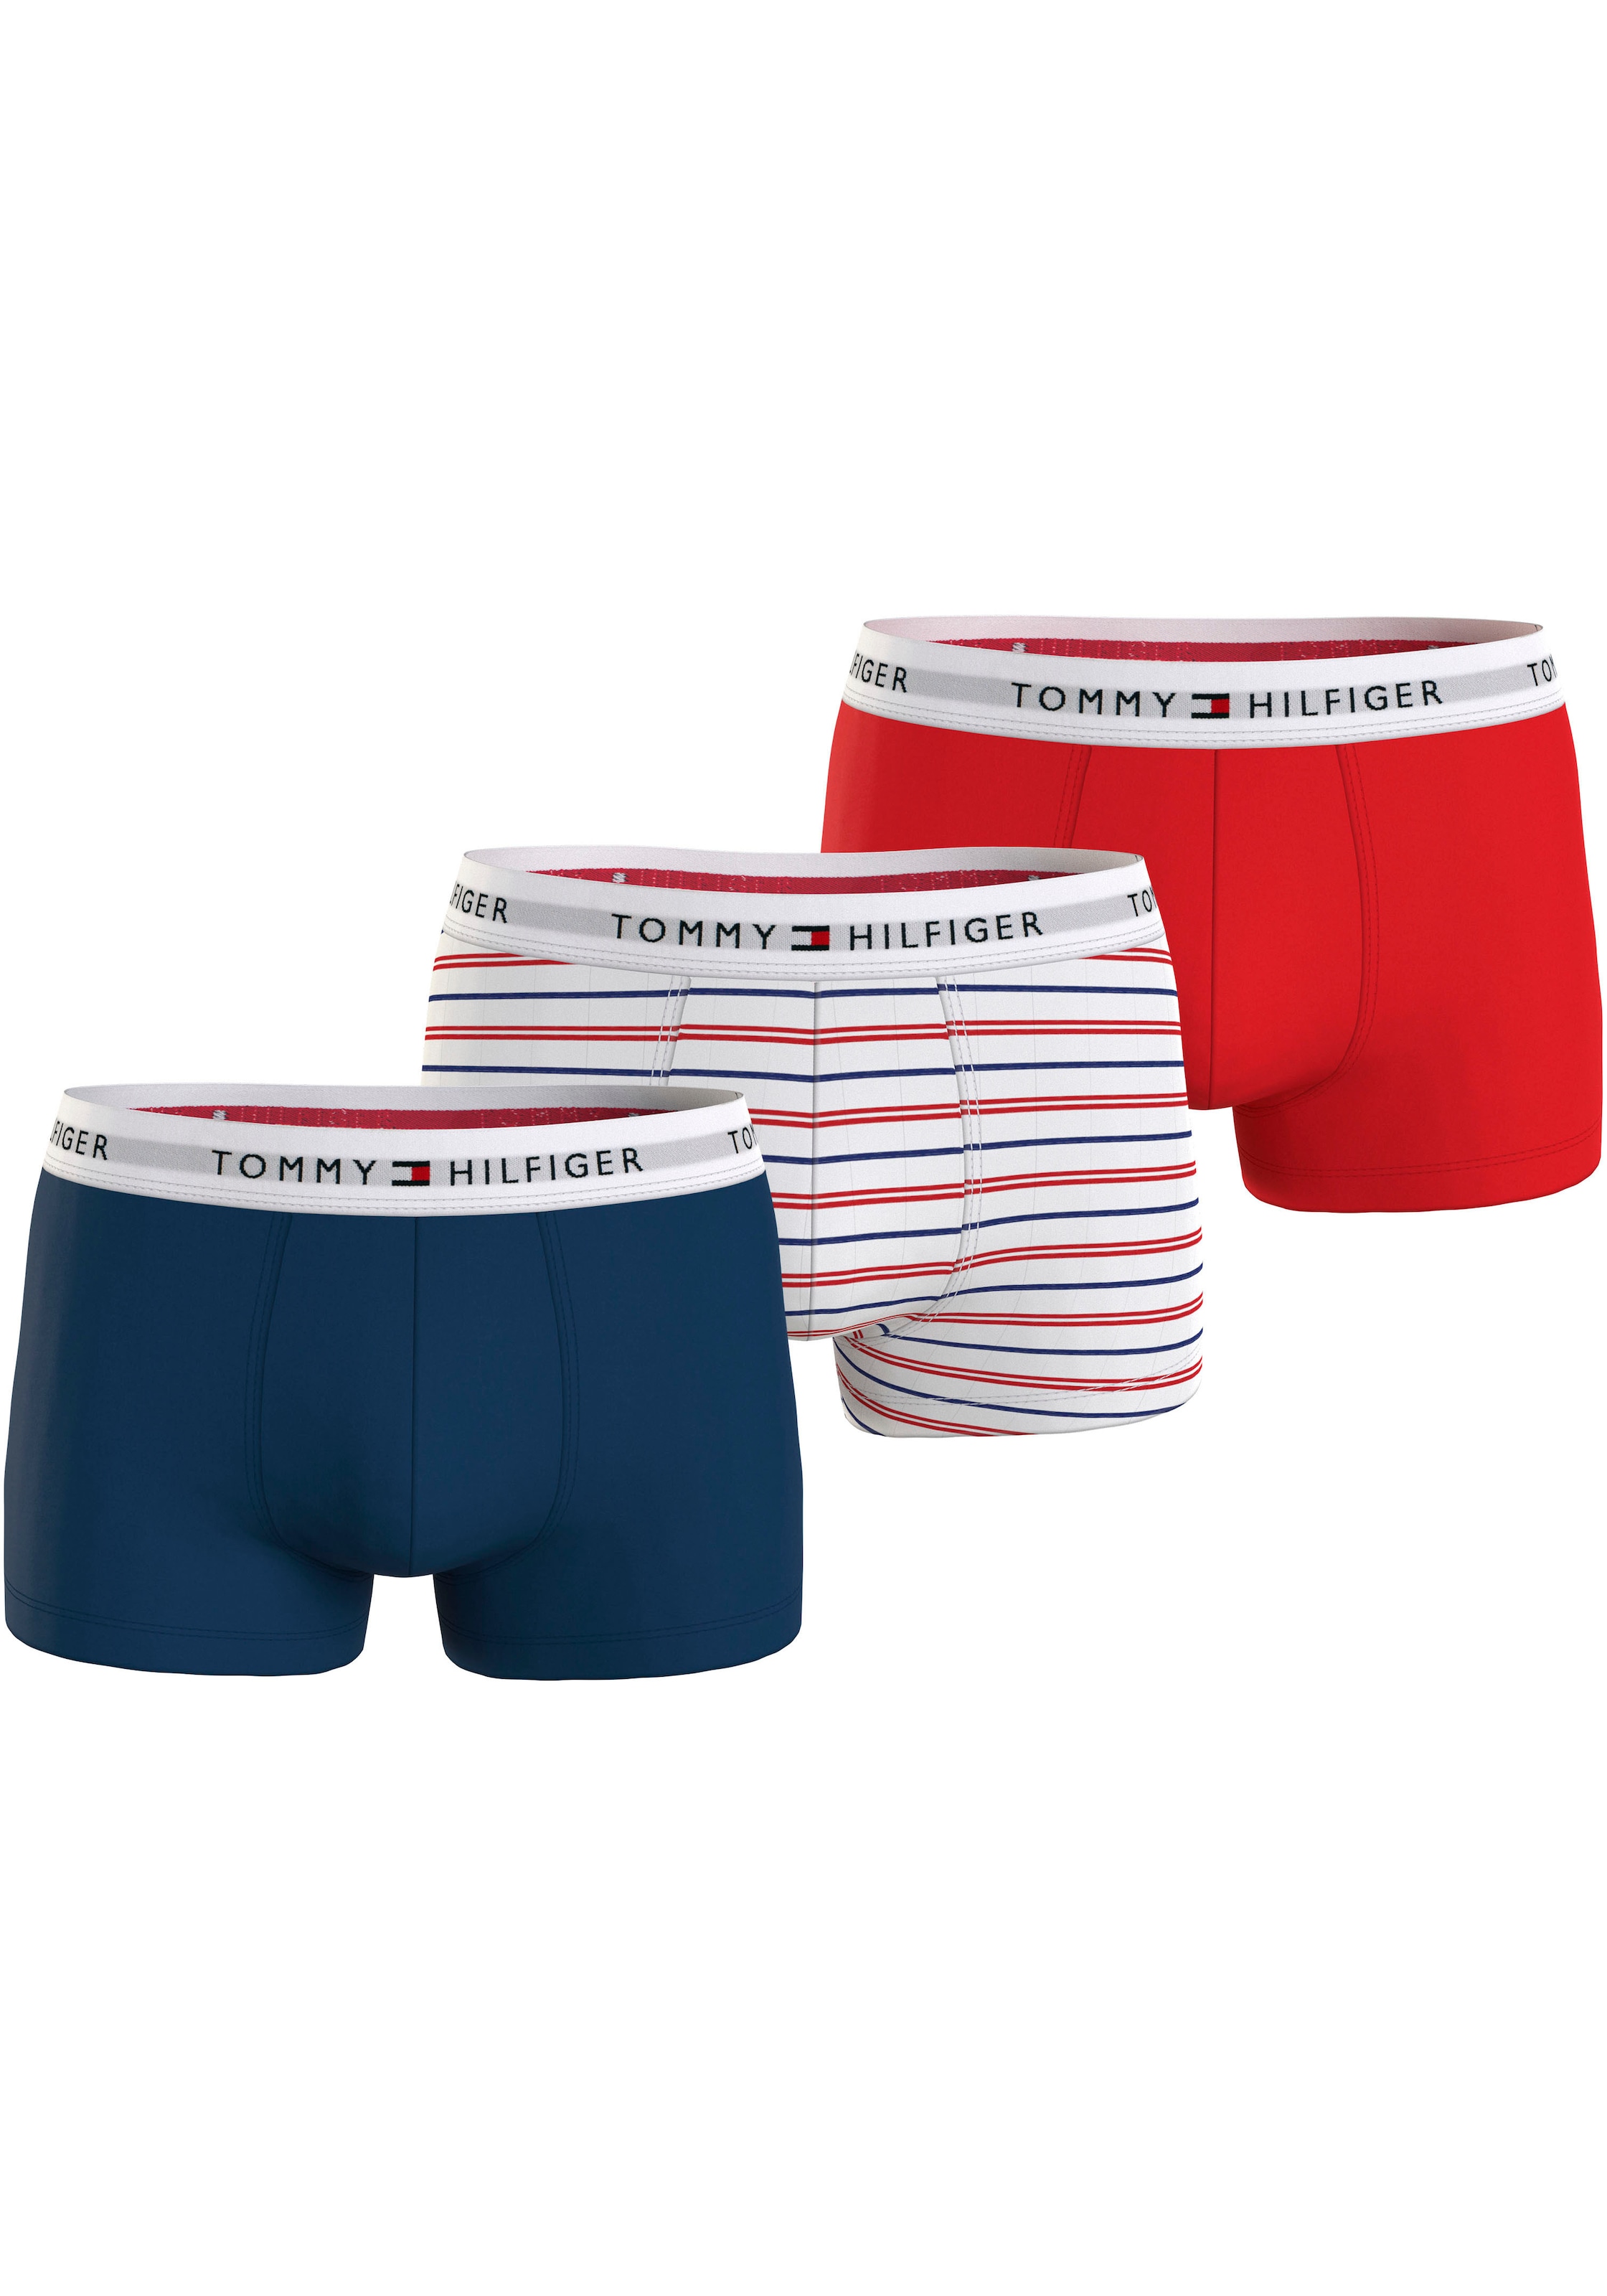 Tommy Hilfiger online BAUR Underwear | kaufen